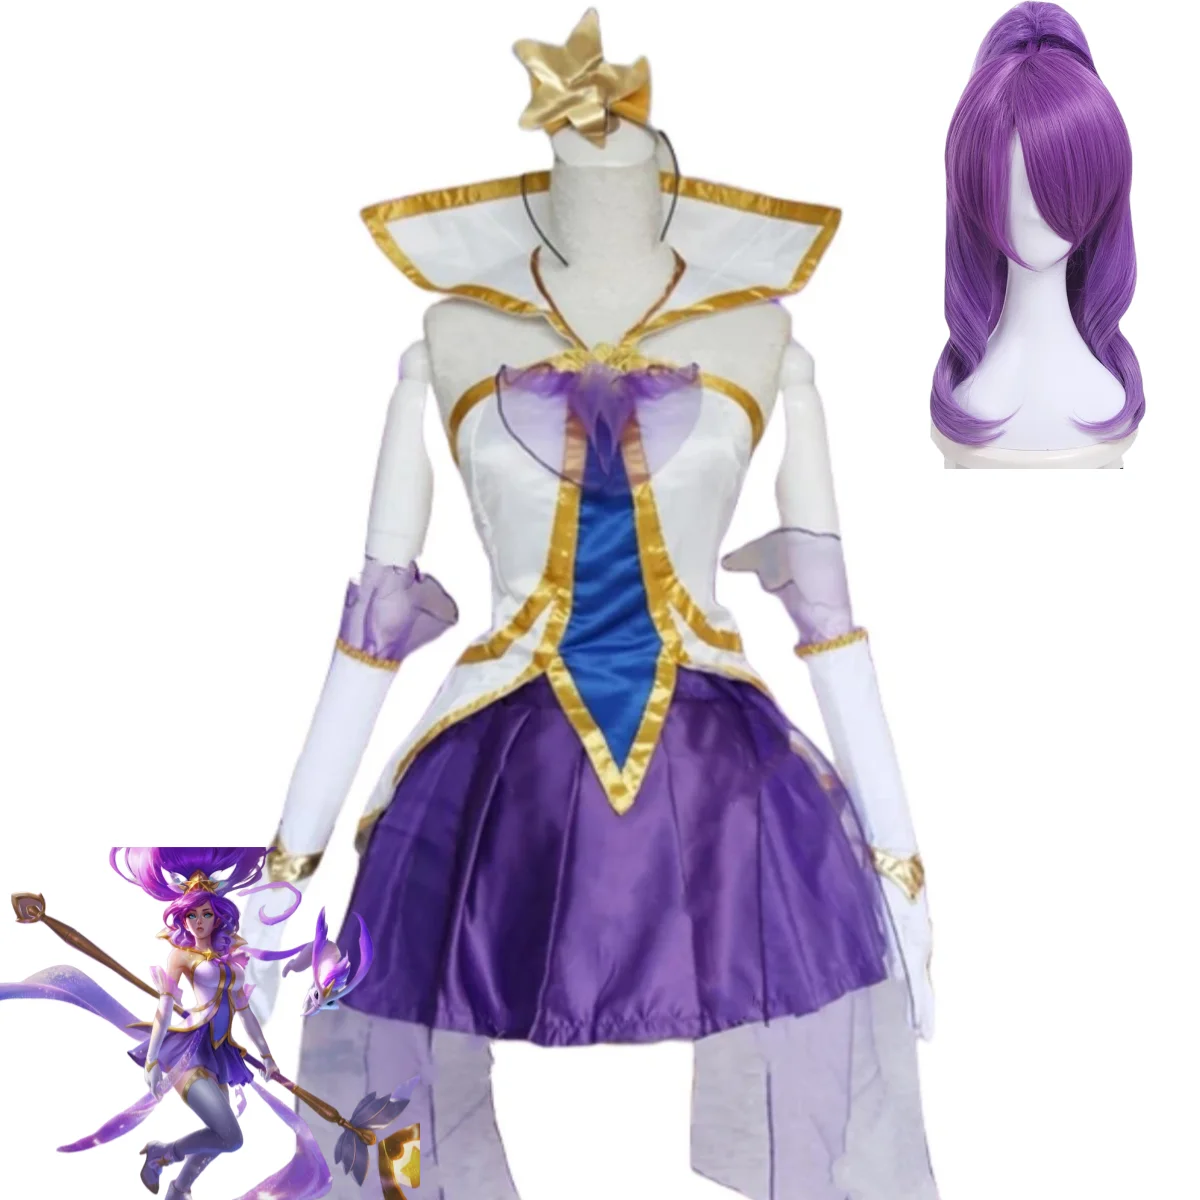 

Костюм для косплея из игры «LOL Star Guardian of Soraka Janna», пурпурная юбка «Звезда», парик для взрослых женщин, сексуальный костюм на карнавал и Хэллоуин